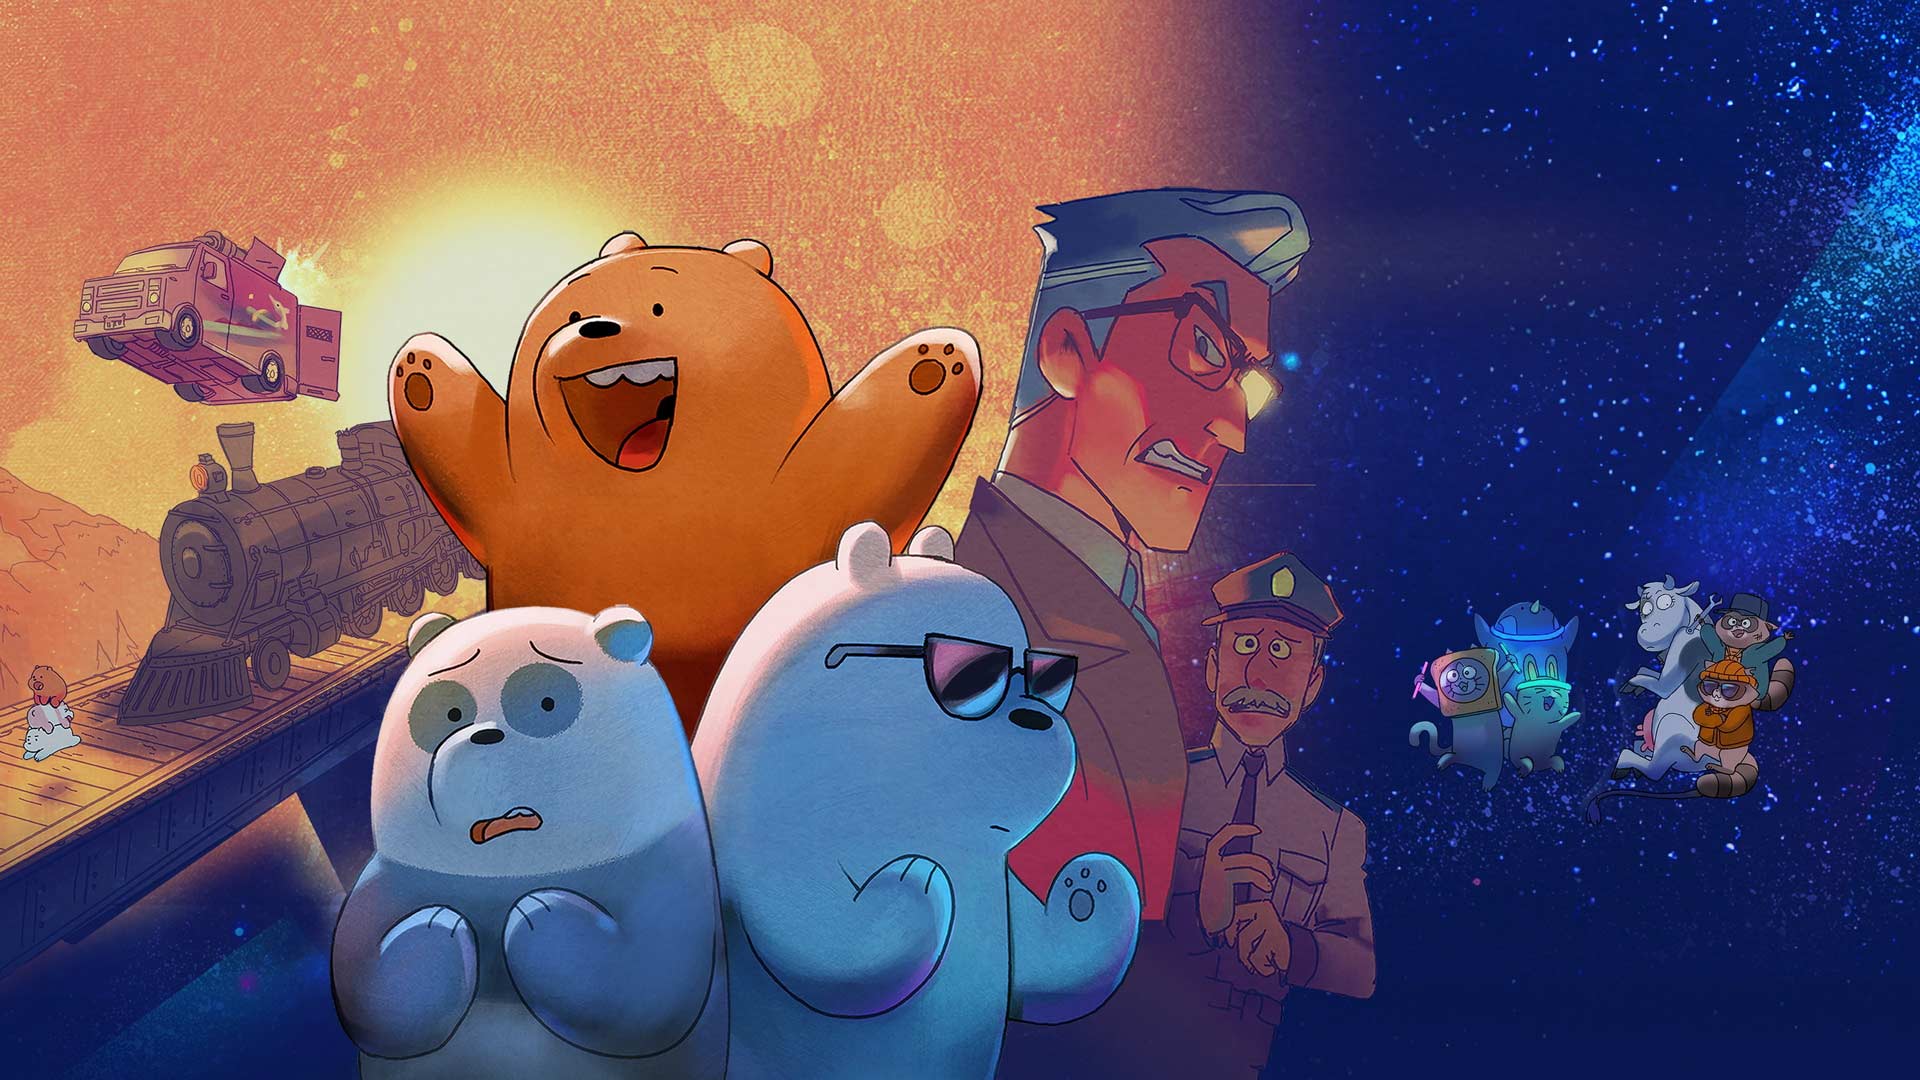 گریزلی، پاندا و خرس قطبی در انیمیشن سه خرس ساده لوح یا خرس های کله فندقی